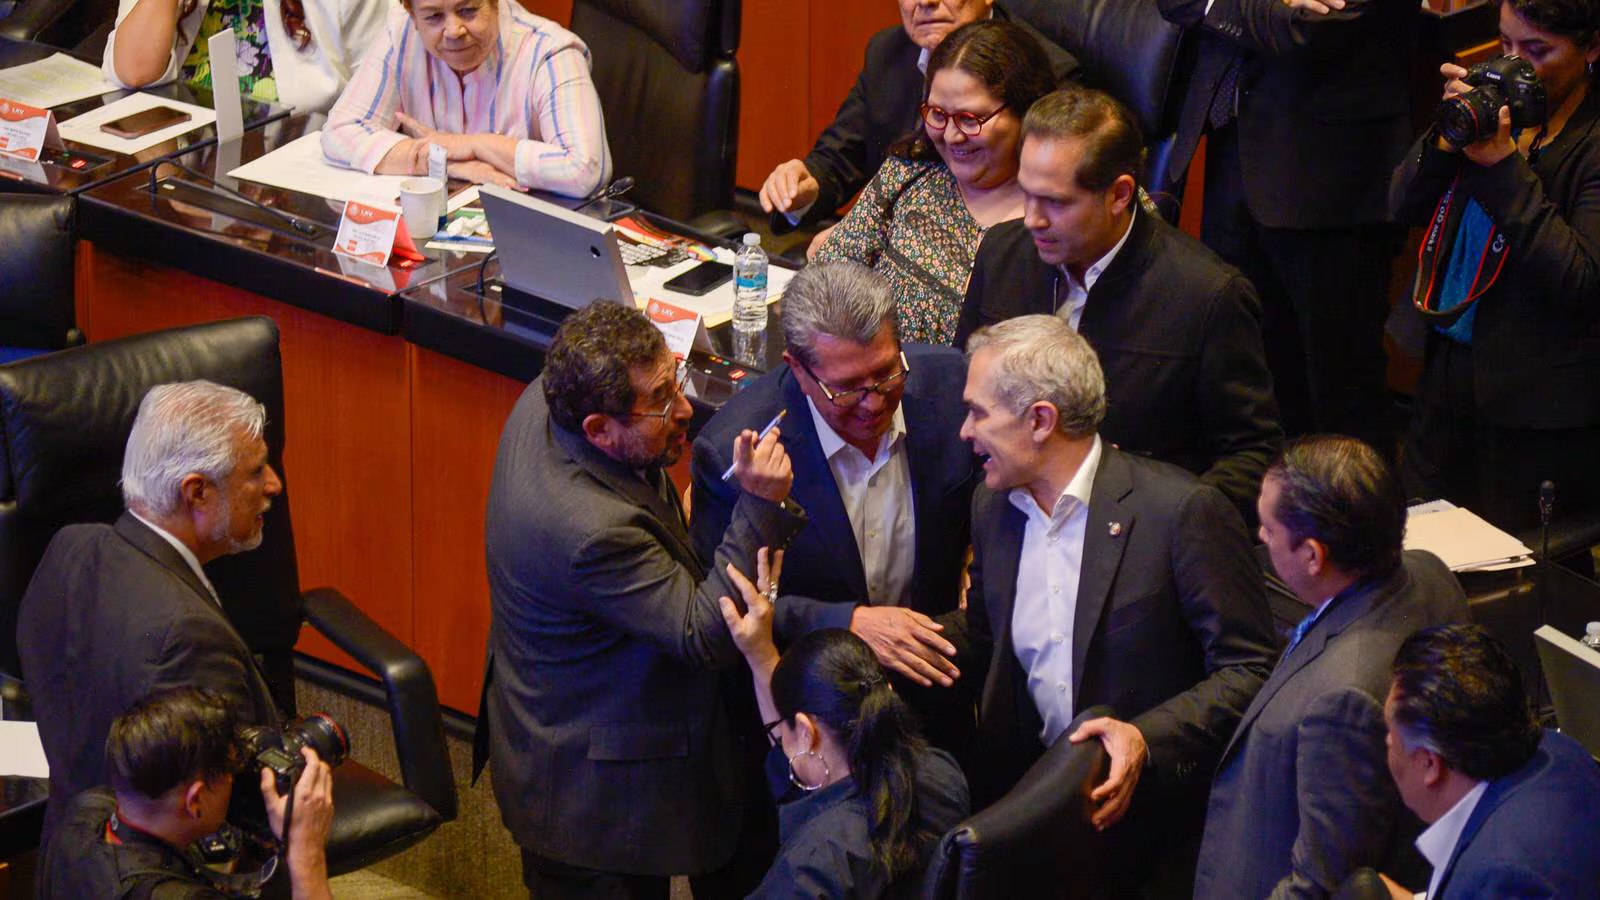 César Cravioto y Miguel Ángel Mancera casi llegan a los golpes en el Senado